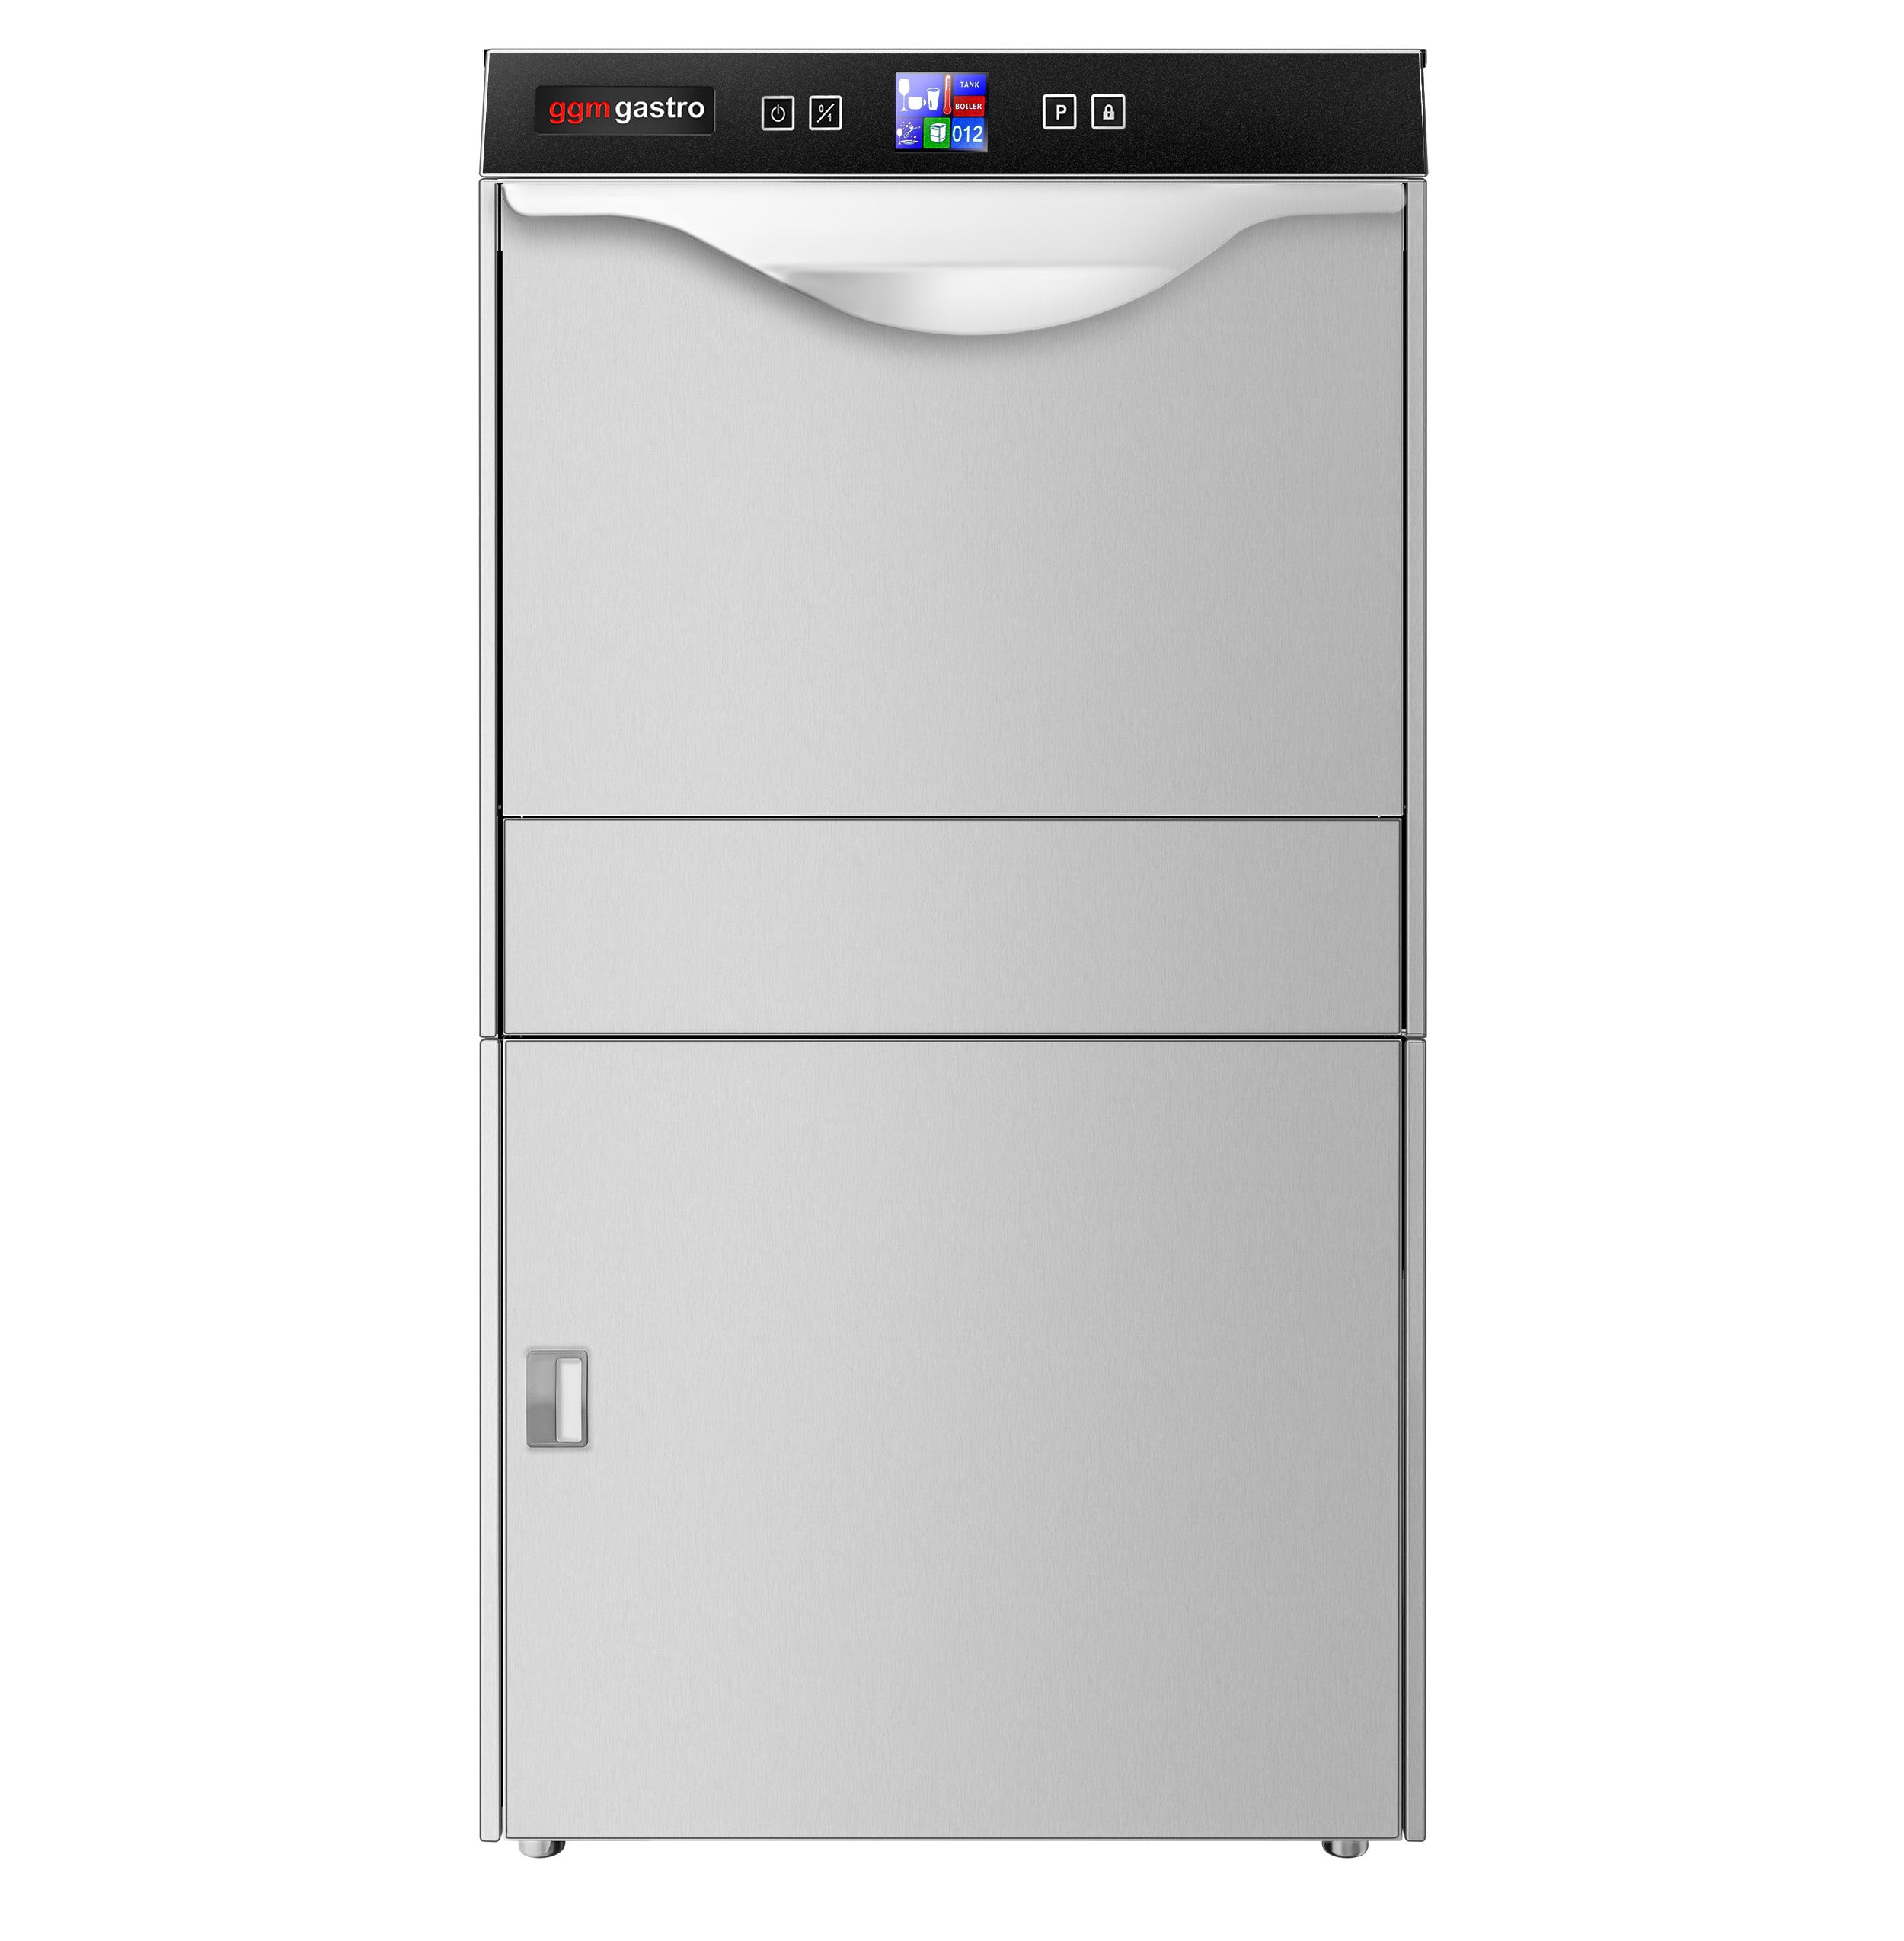 Opvaskemaskine - Digital - 3,55 kW - med vaskemiddel, afspændingsmiddel og ludpumpe